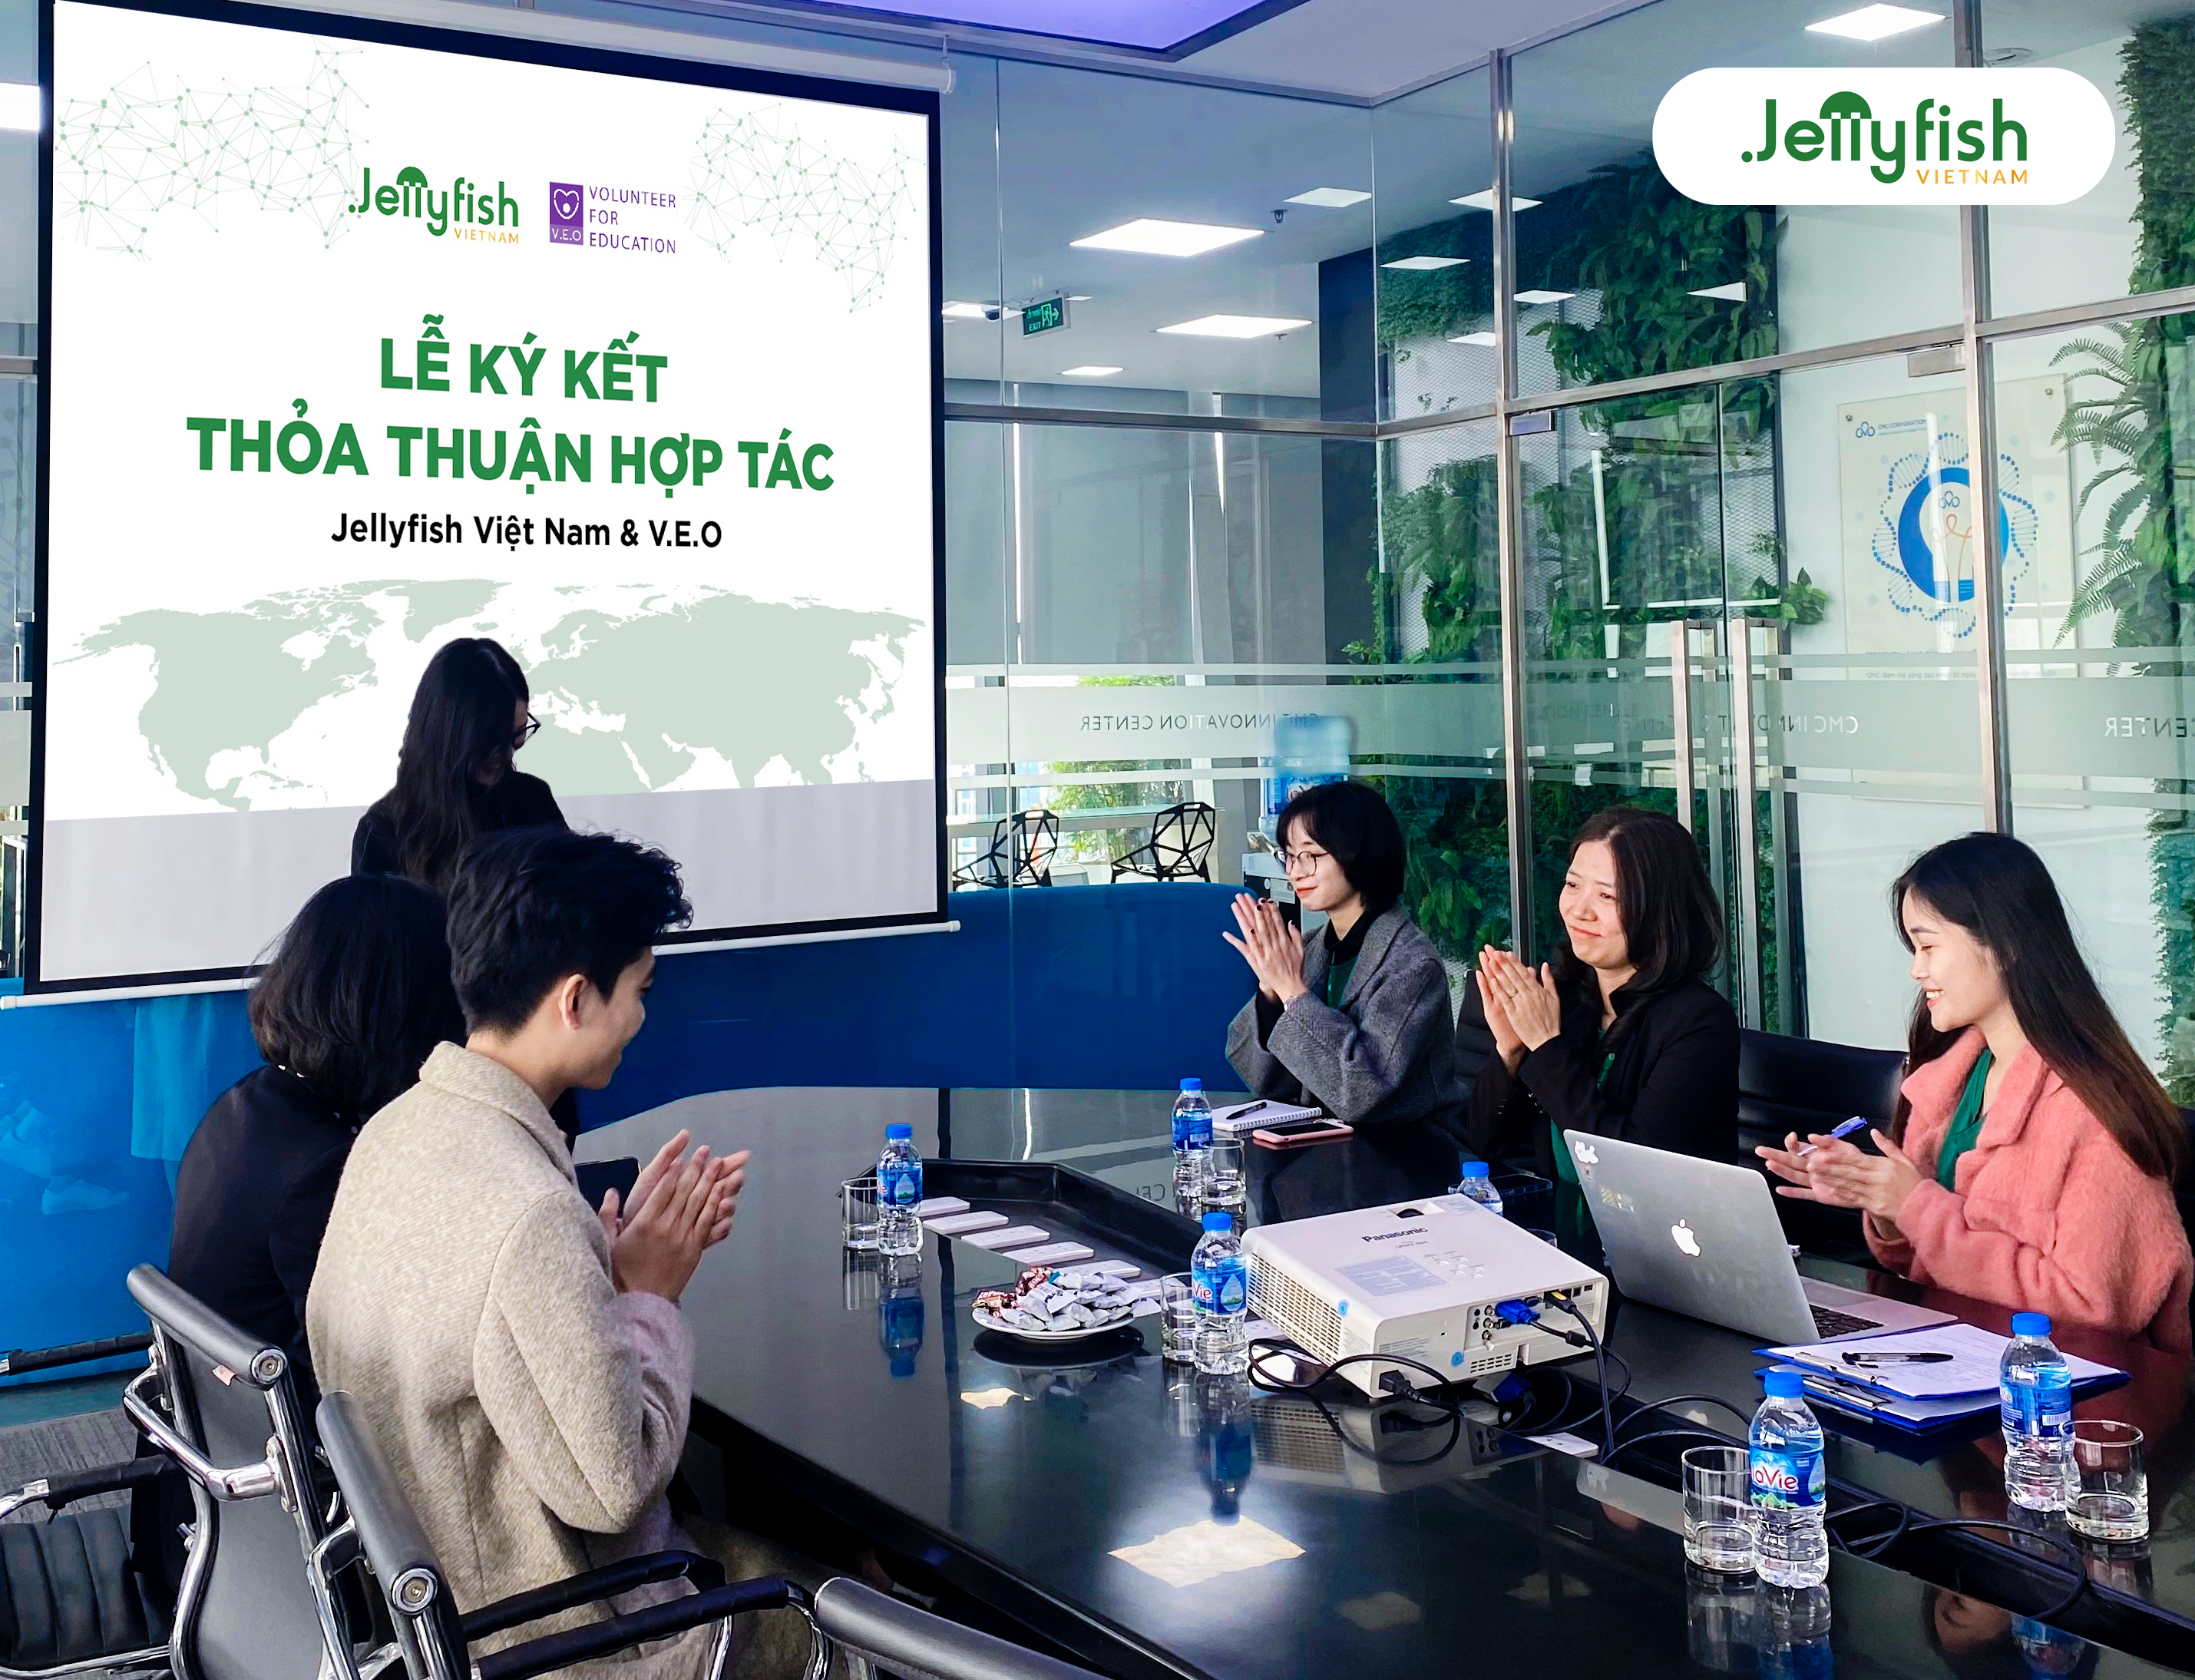 Lễ ký kết thỏa thuận hợp tác Jellyfish Việt Nam & V.E.O